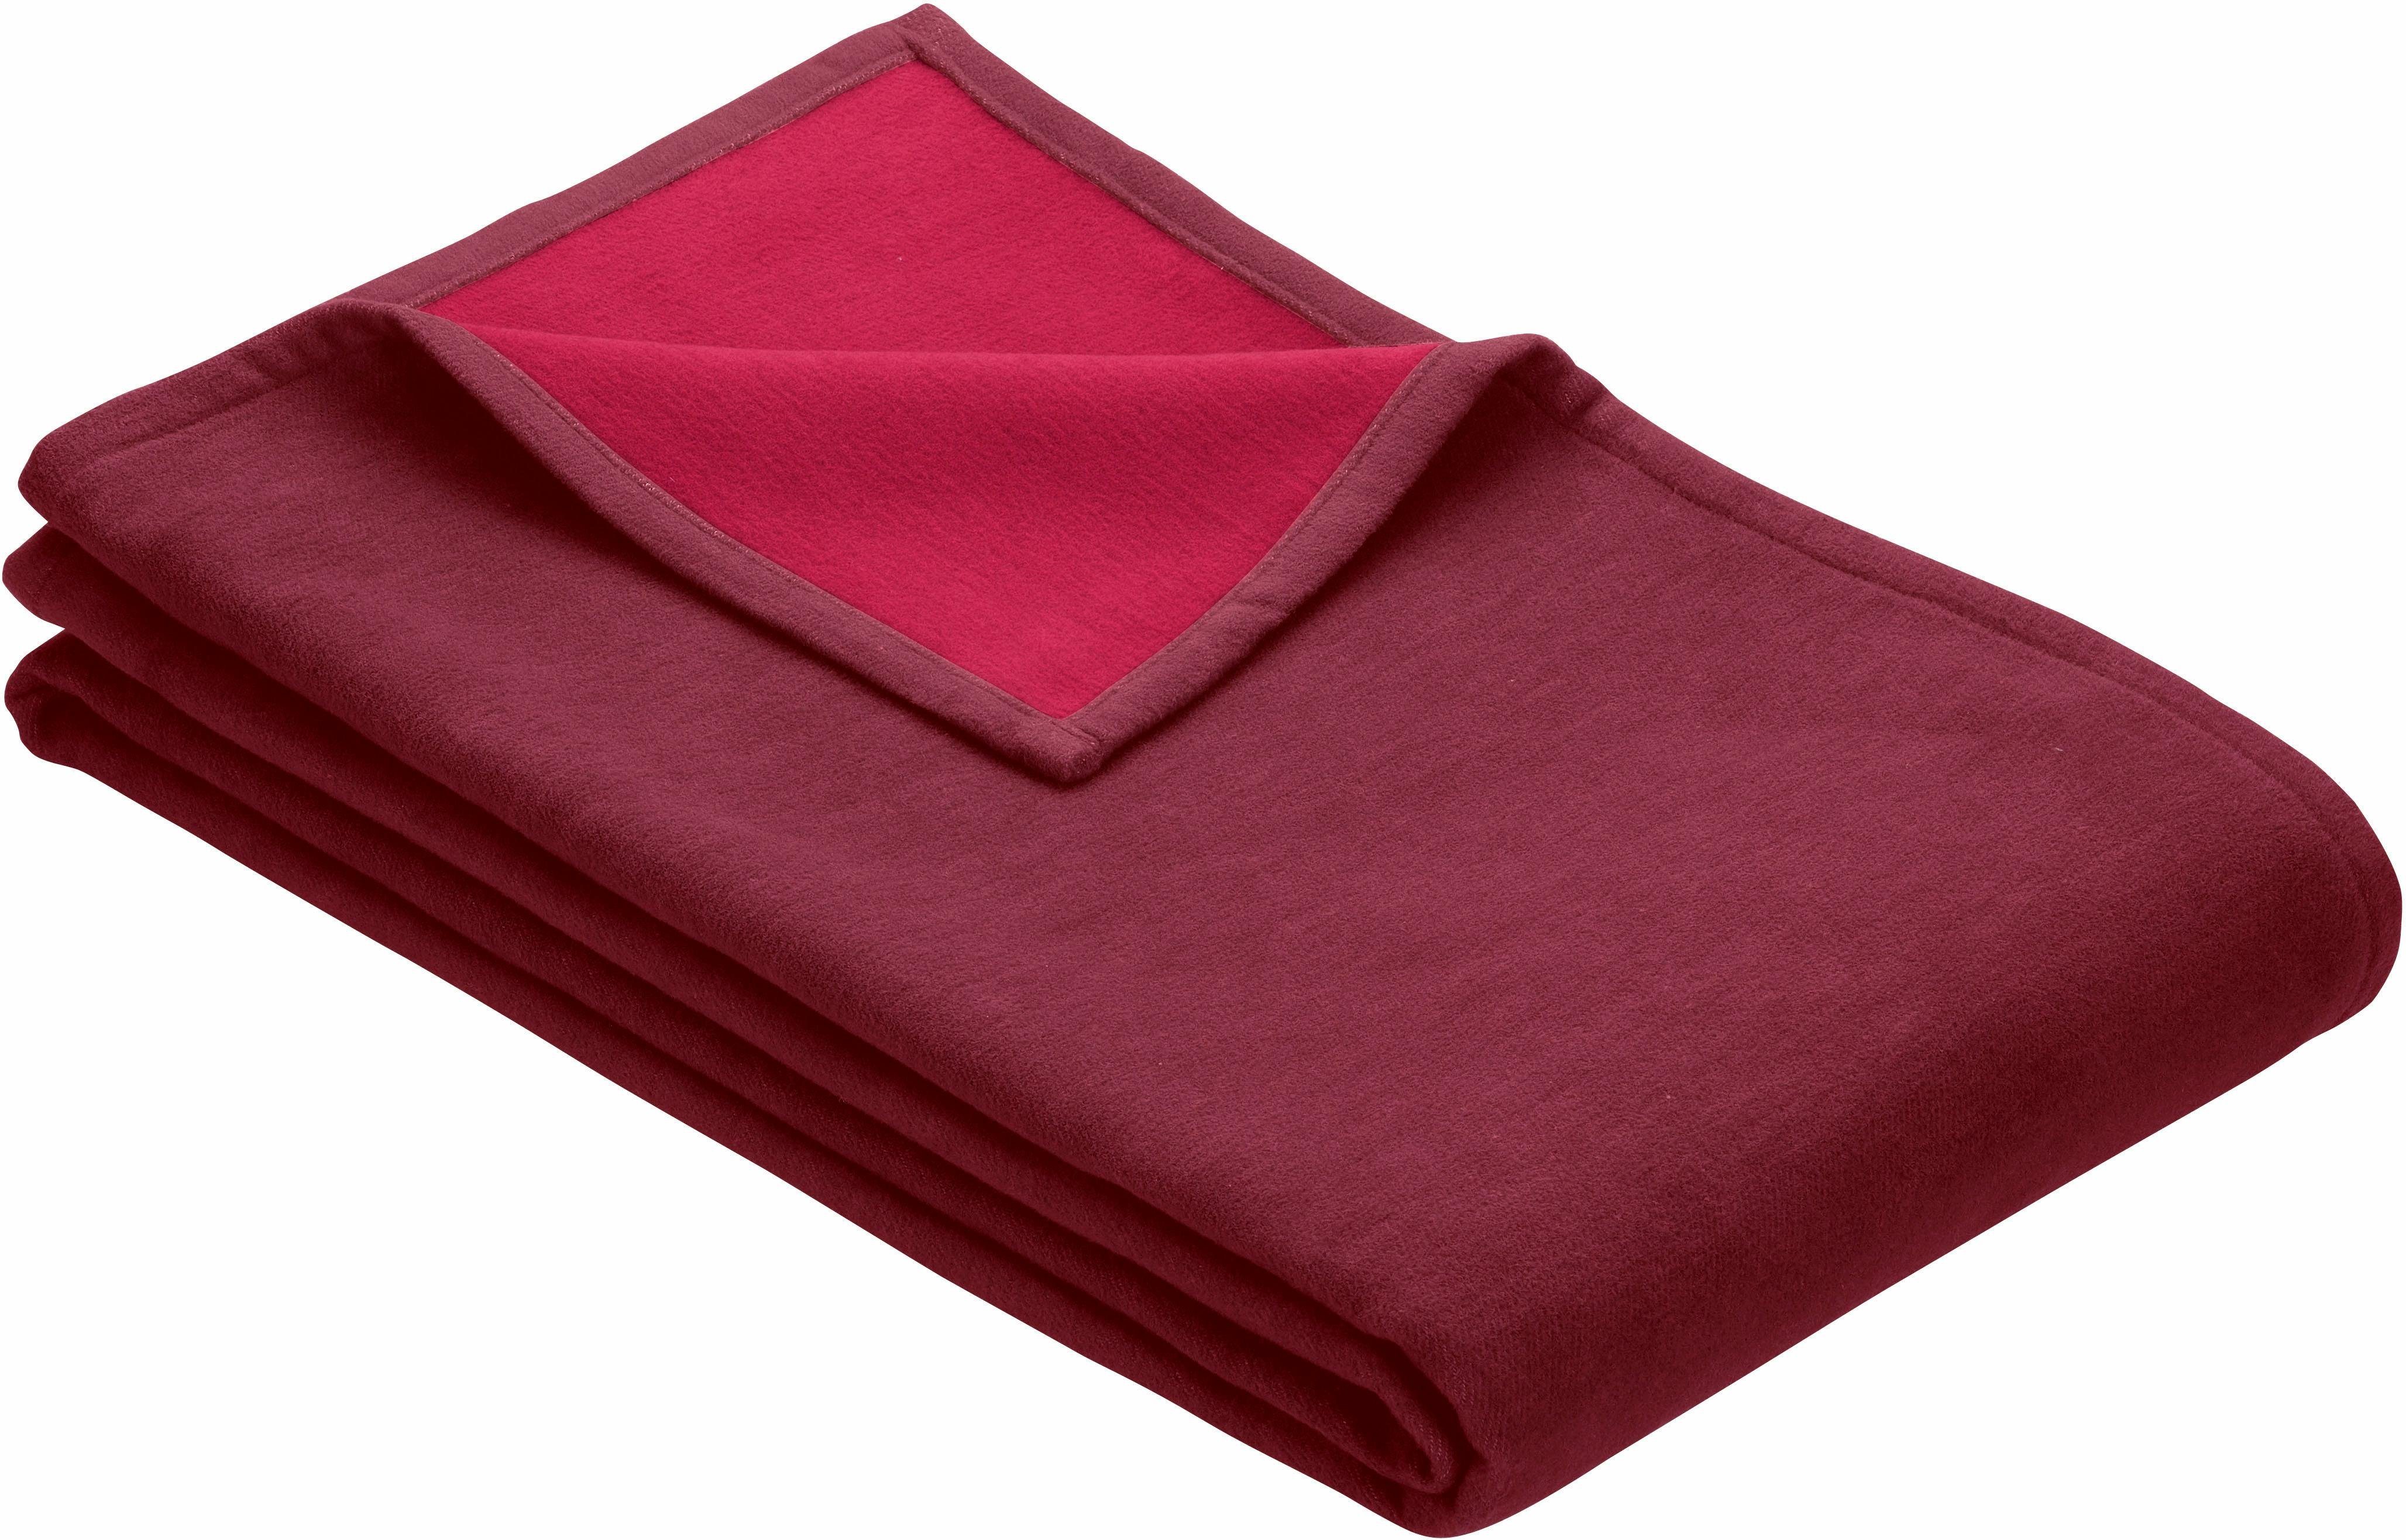 Wohndecke Cotton trendigen IBENA, in dunkelrot/rot Farben Pur